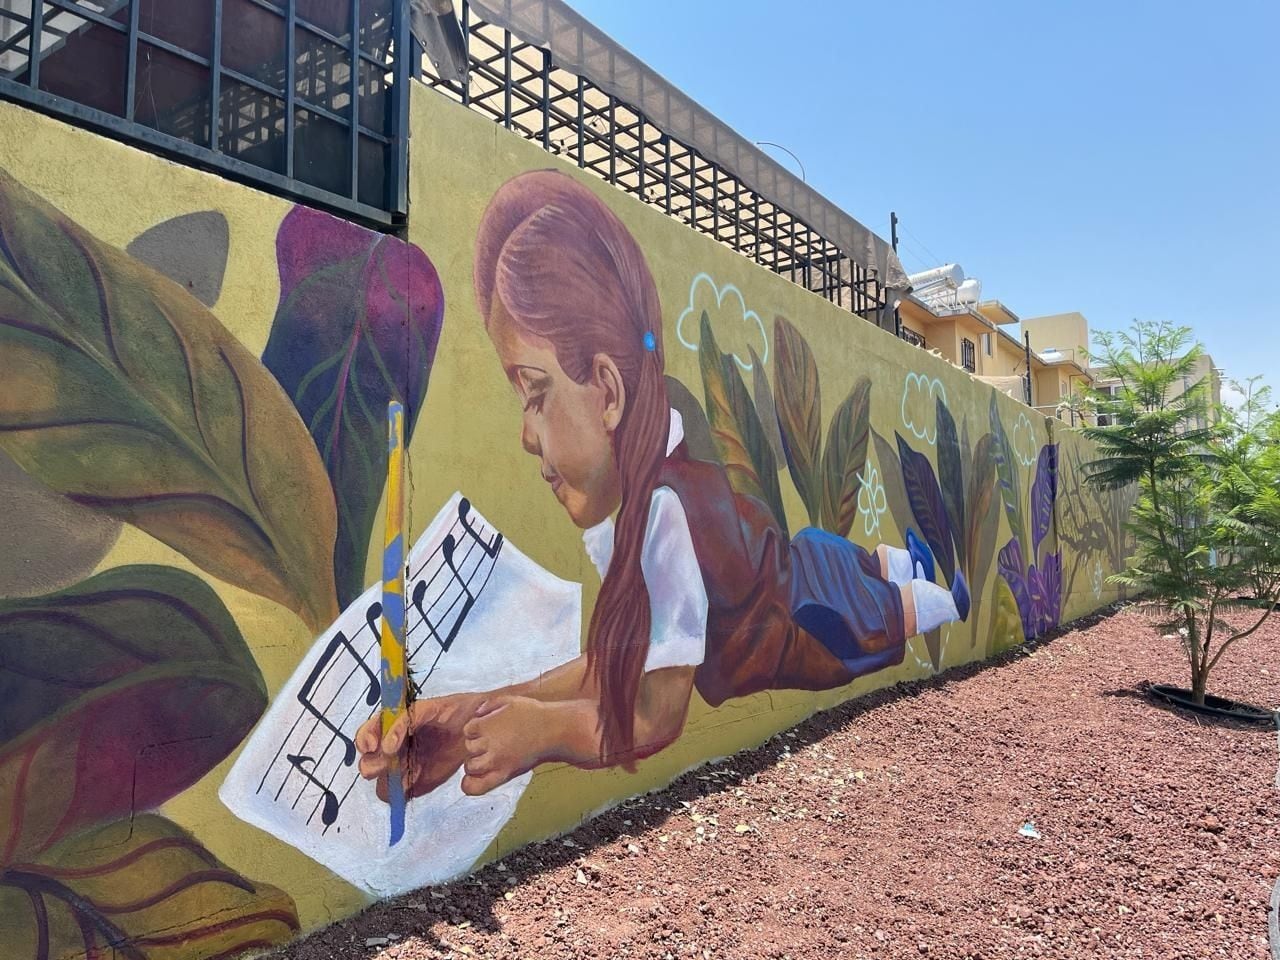 Infonavit y vecinos crean mural comunitario en El Marqués, Querétaro